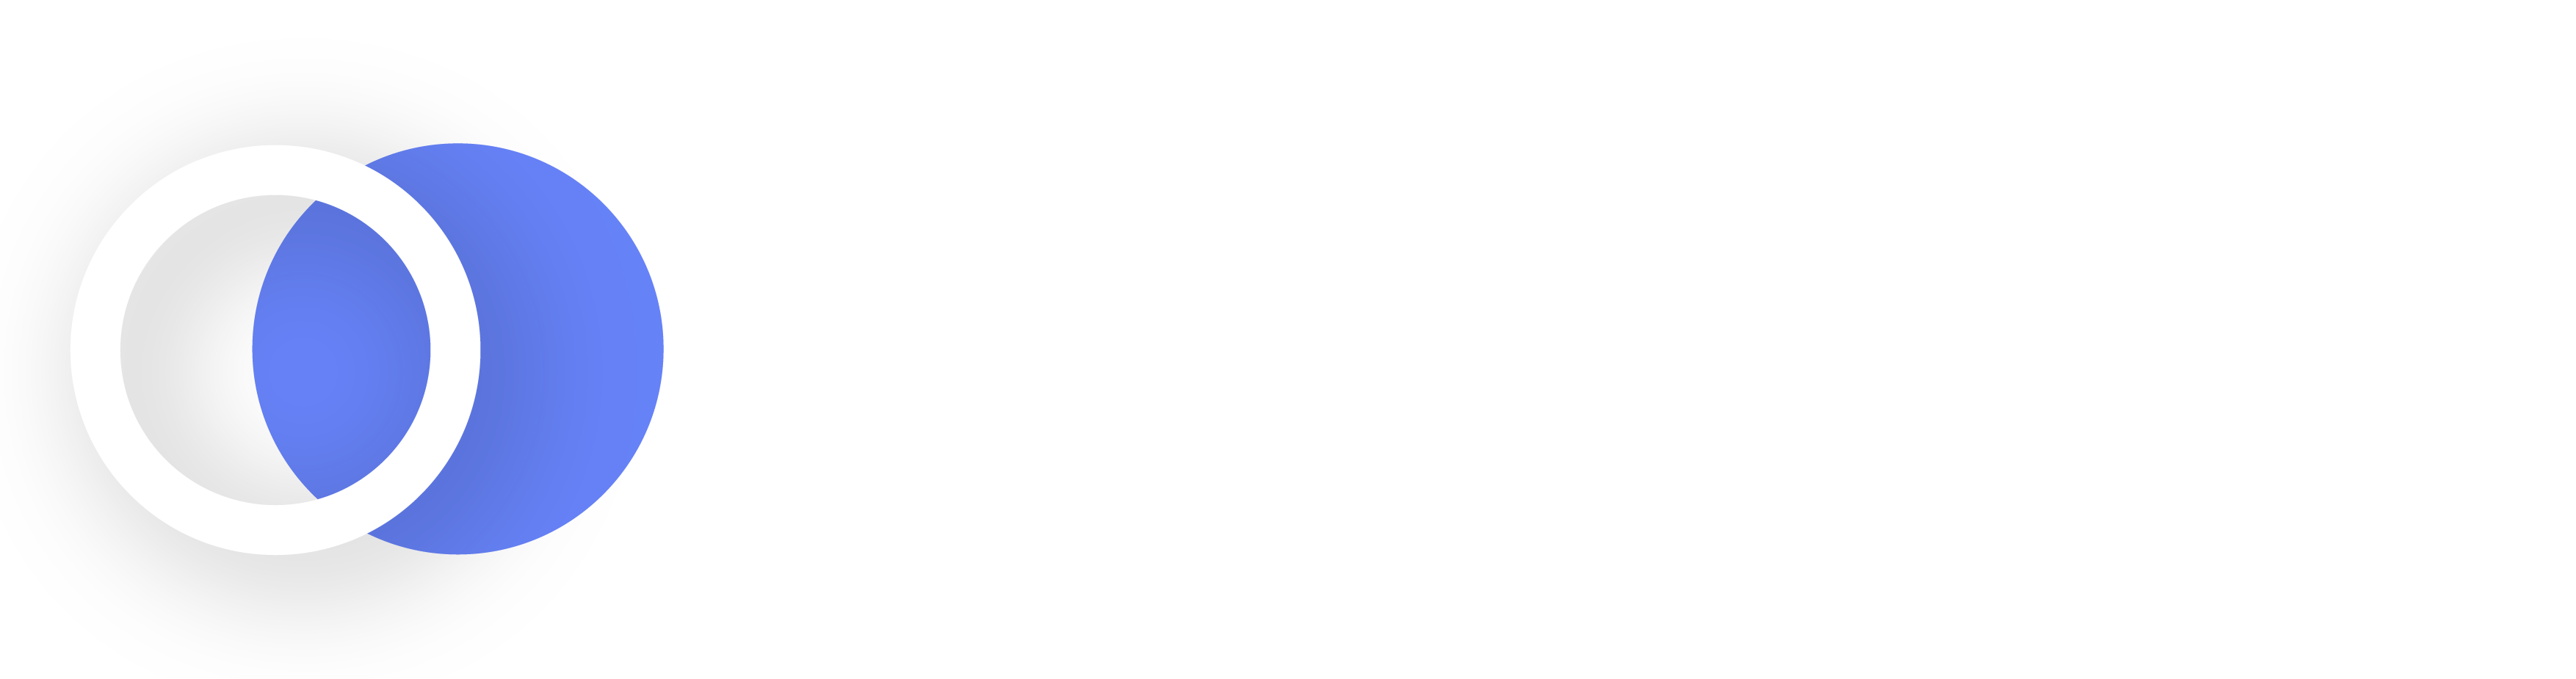 Loop_logo